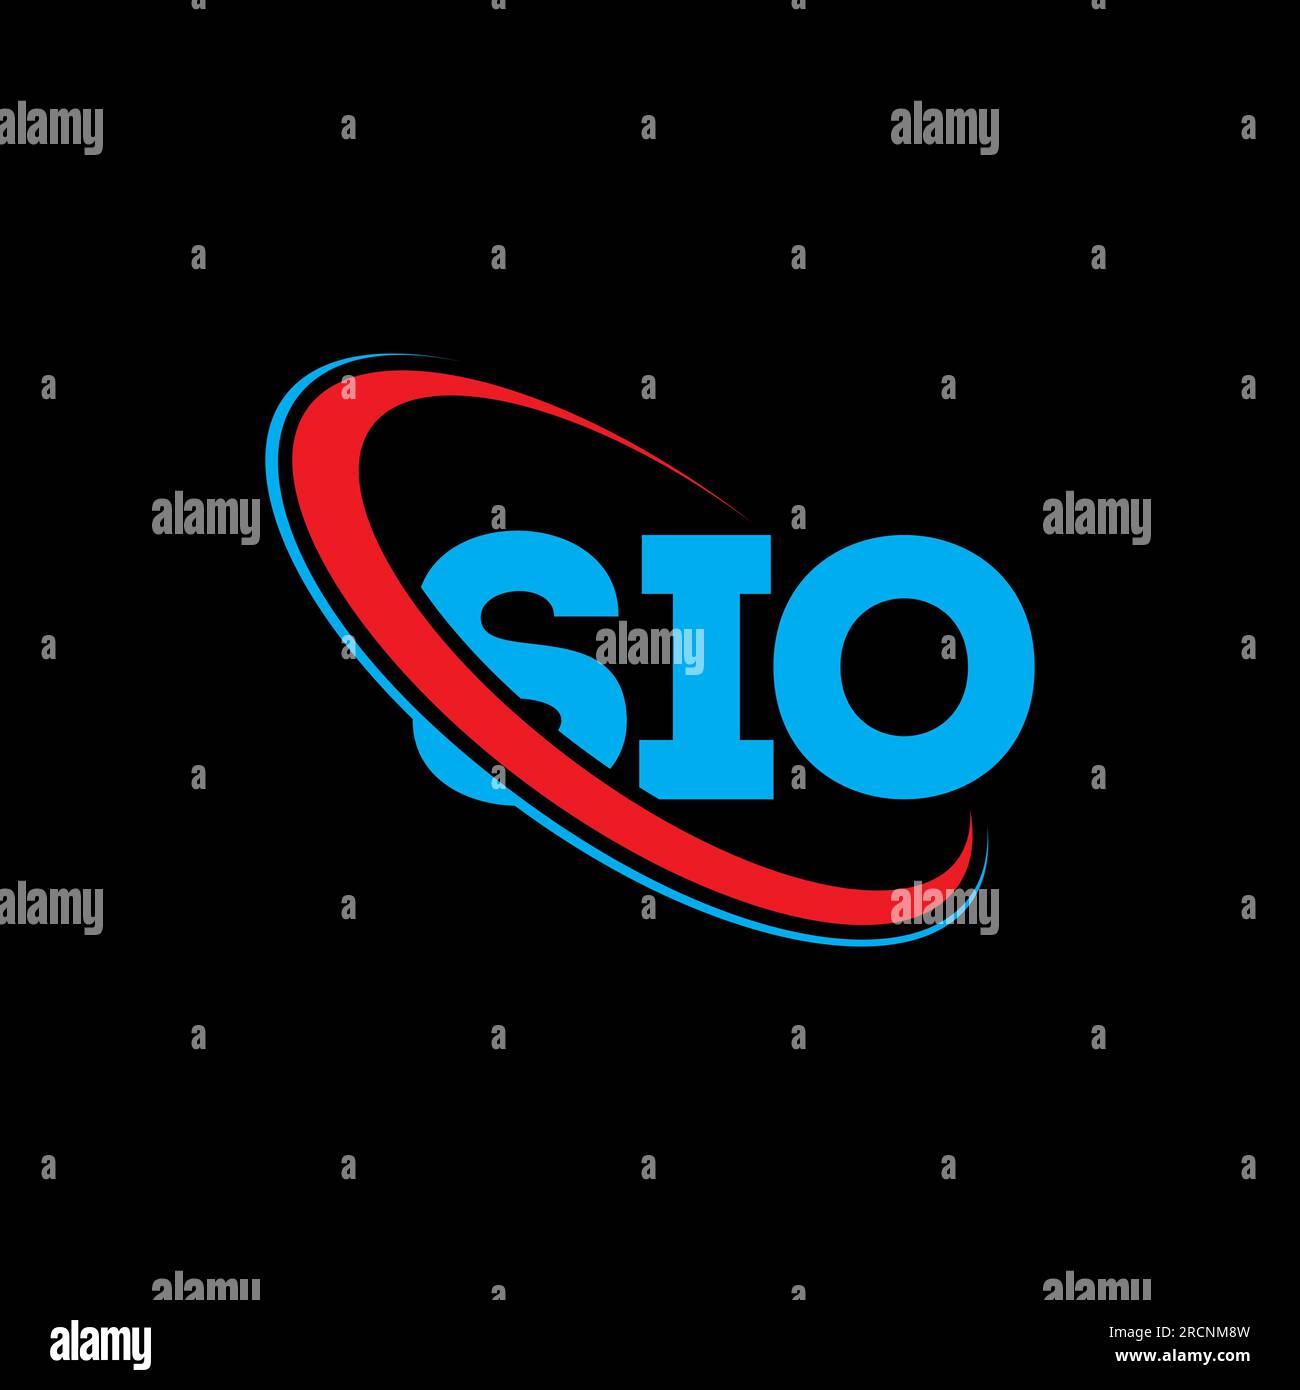 sio logo | SioTamilnadu | Flickr